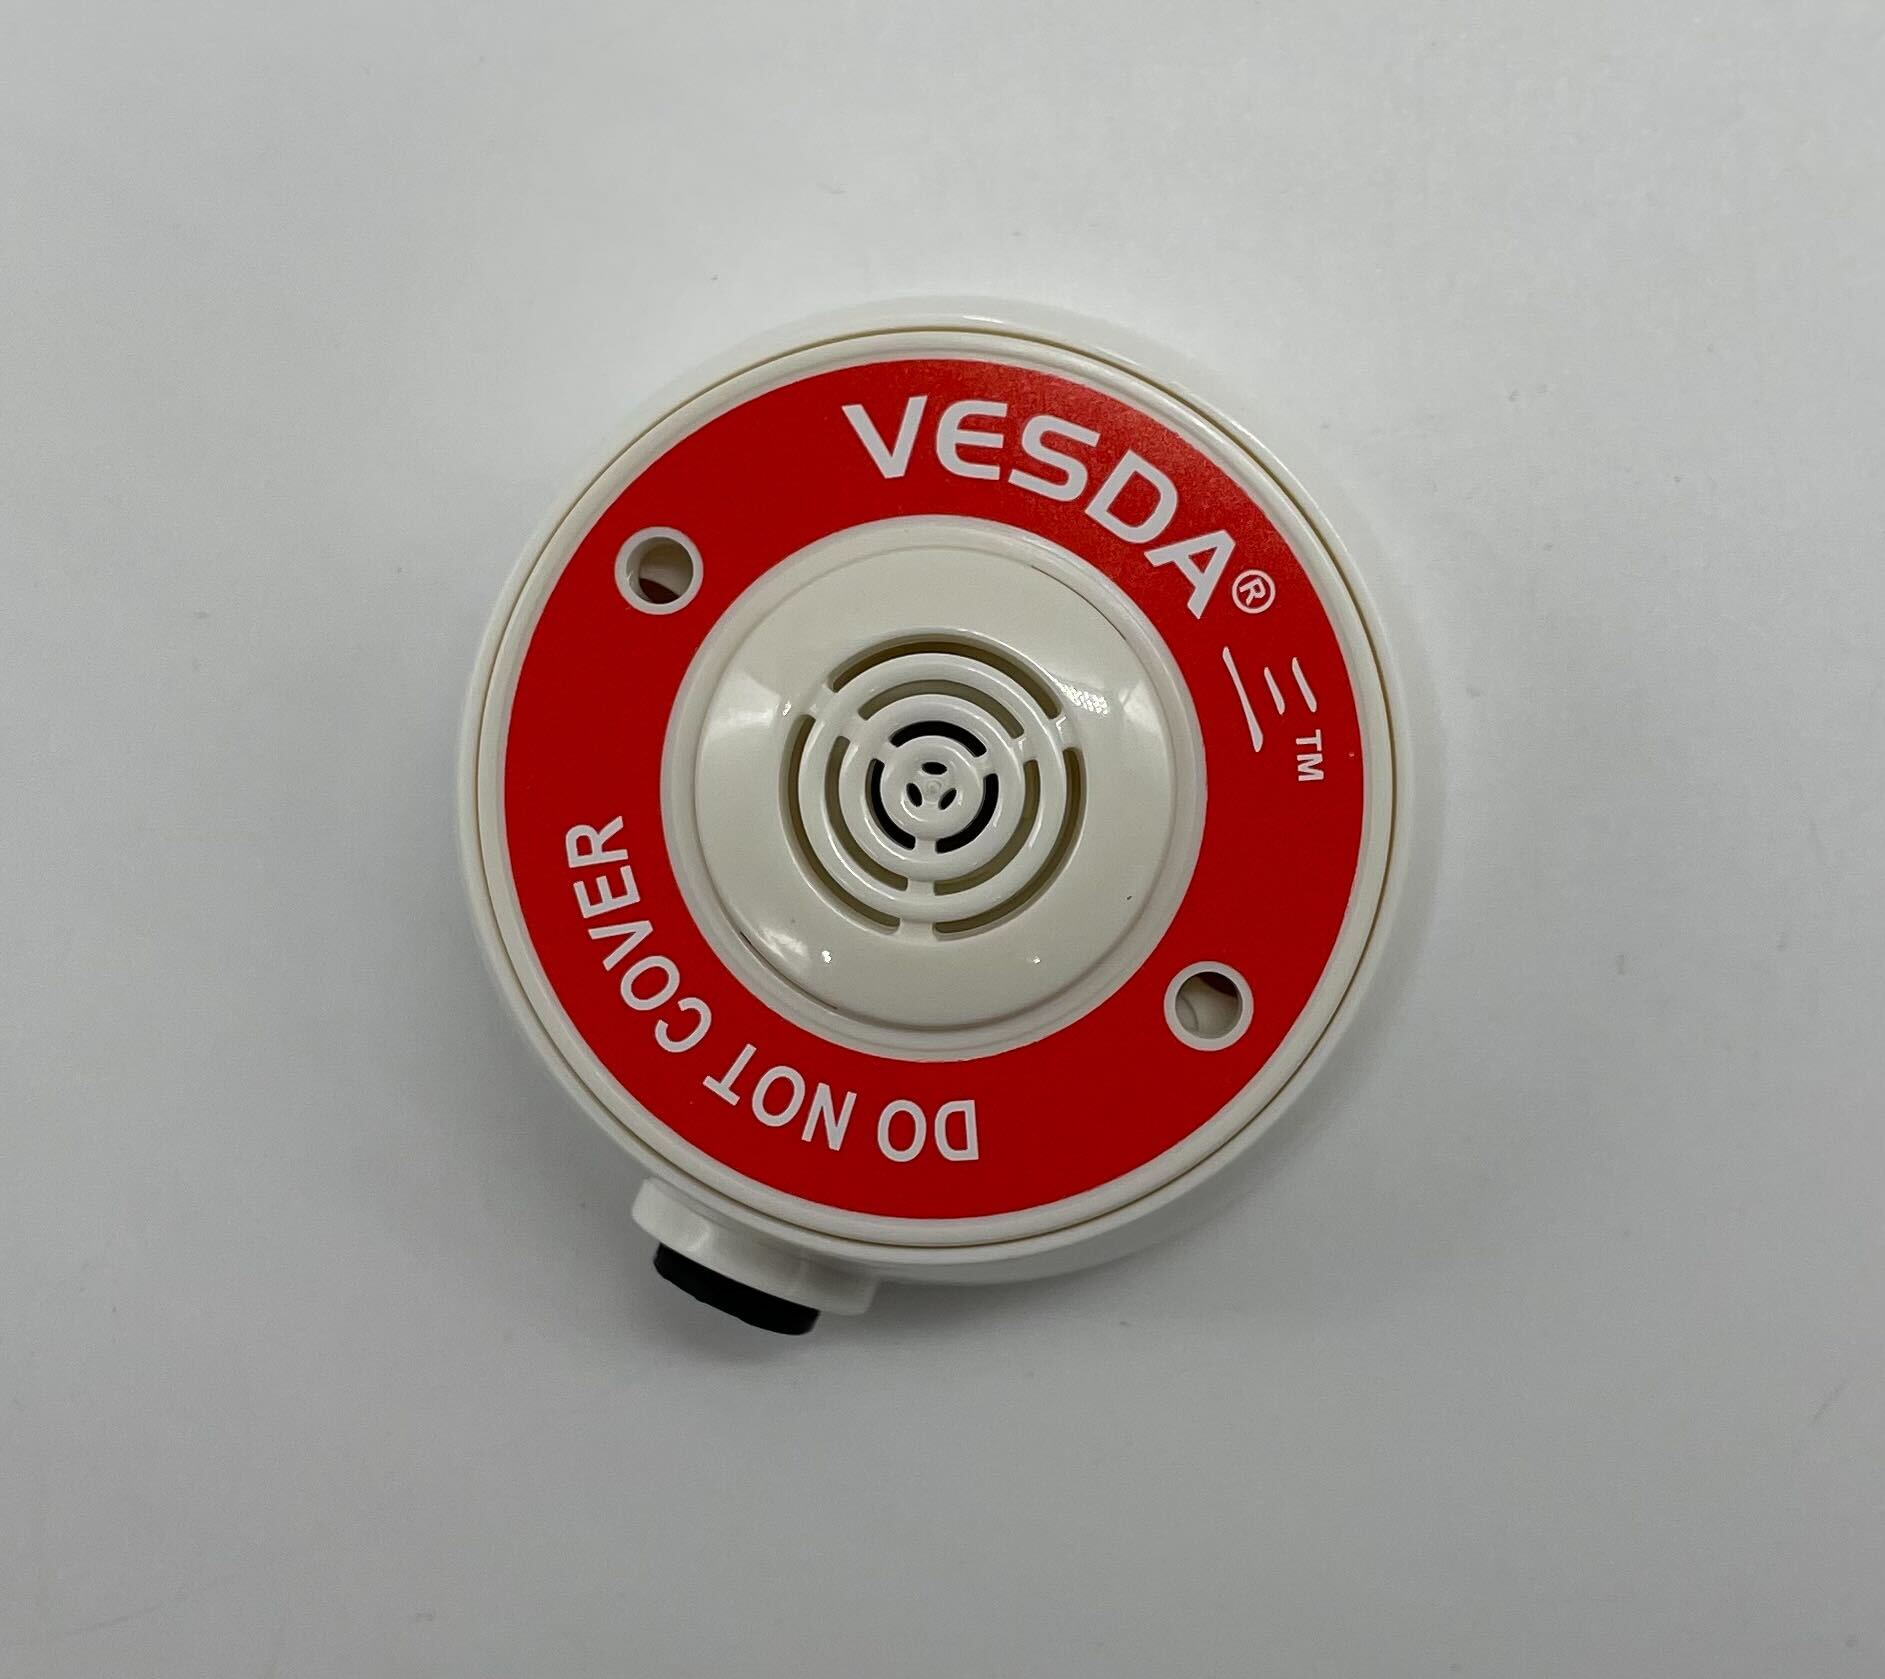 Vesda VSP-982-W22